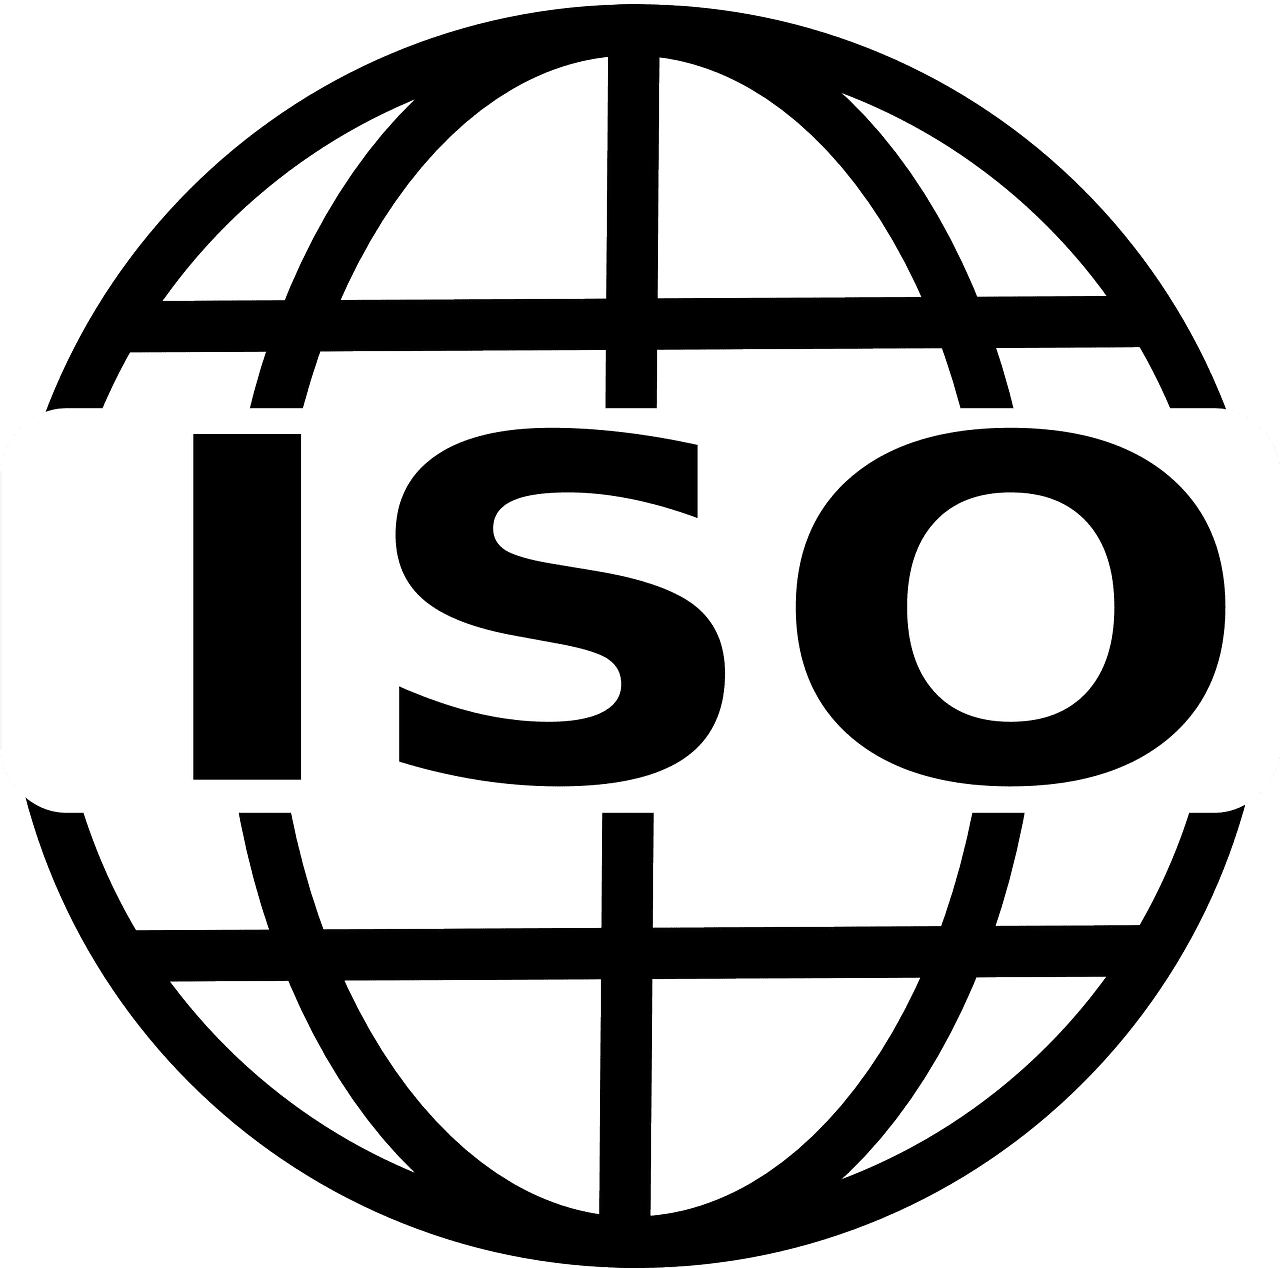 ISO标准